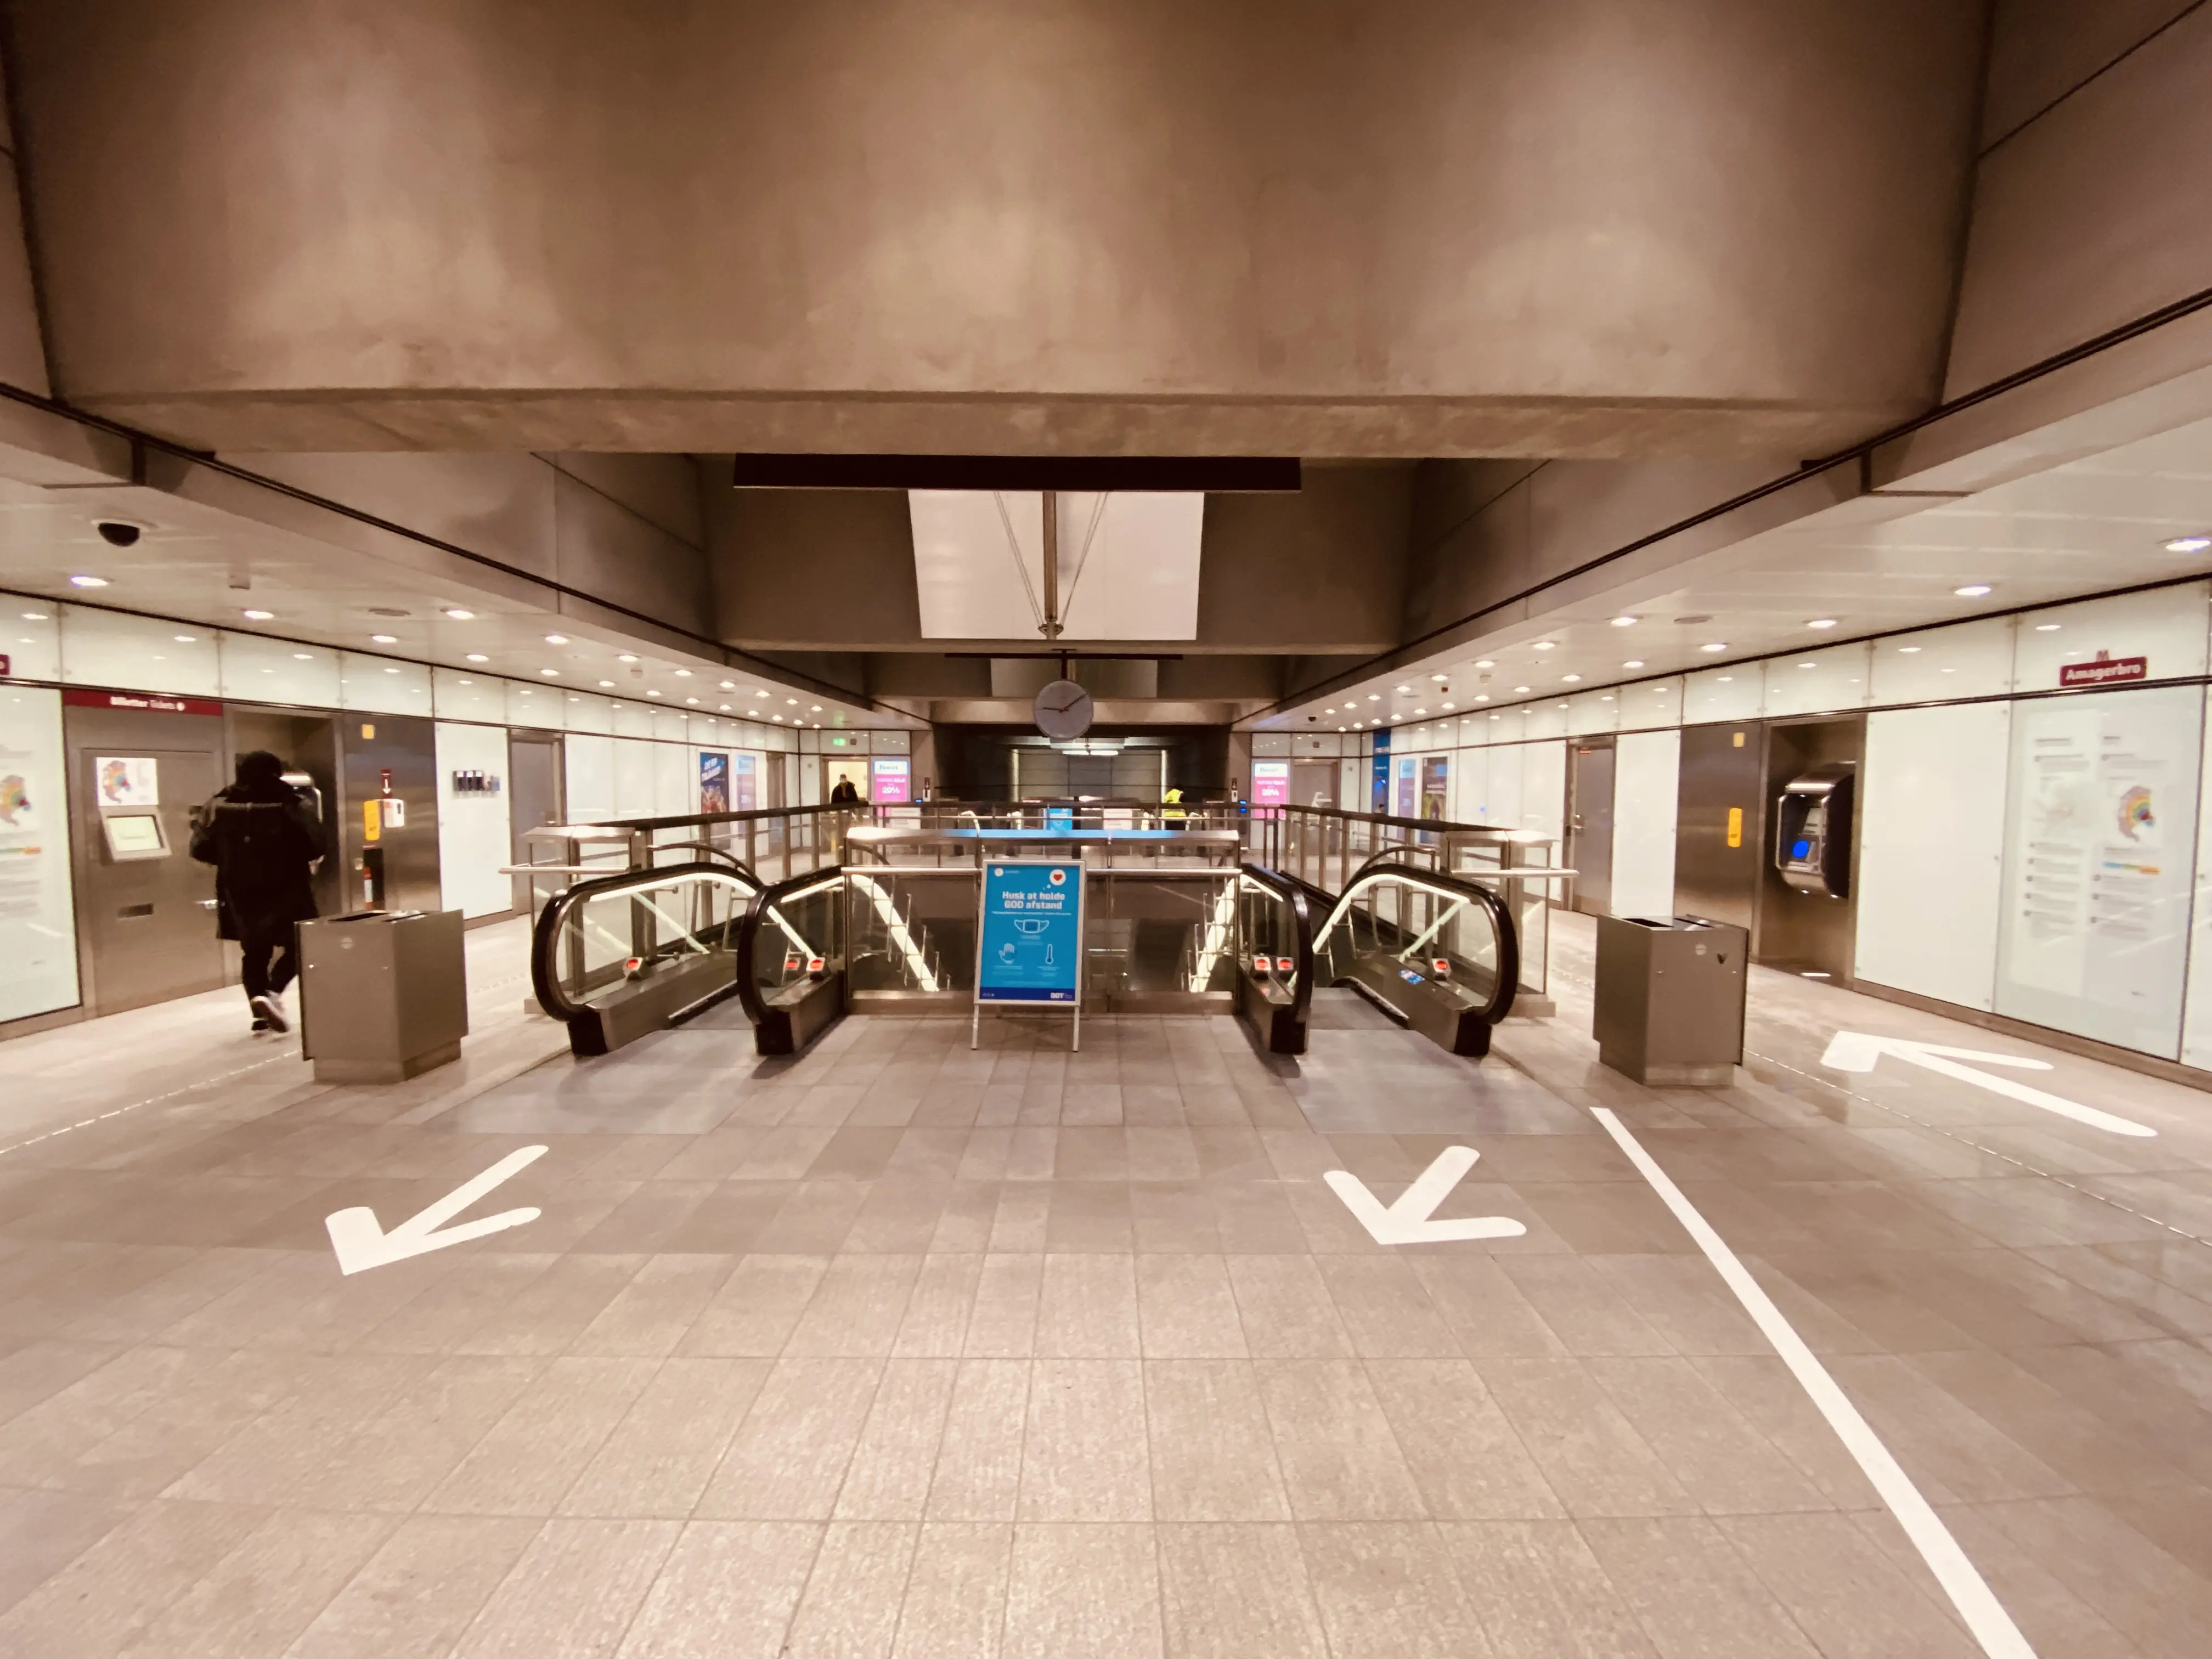 Billede af Amagerbro Metrostation.